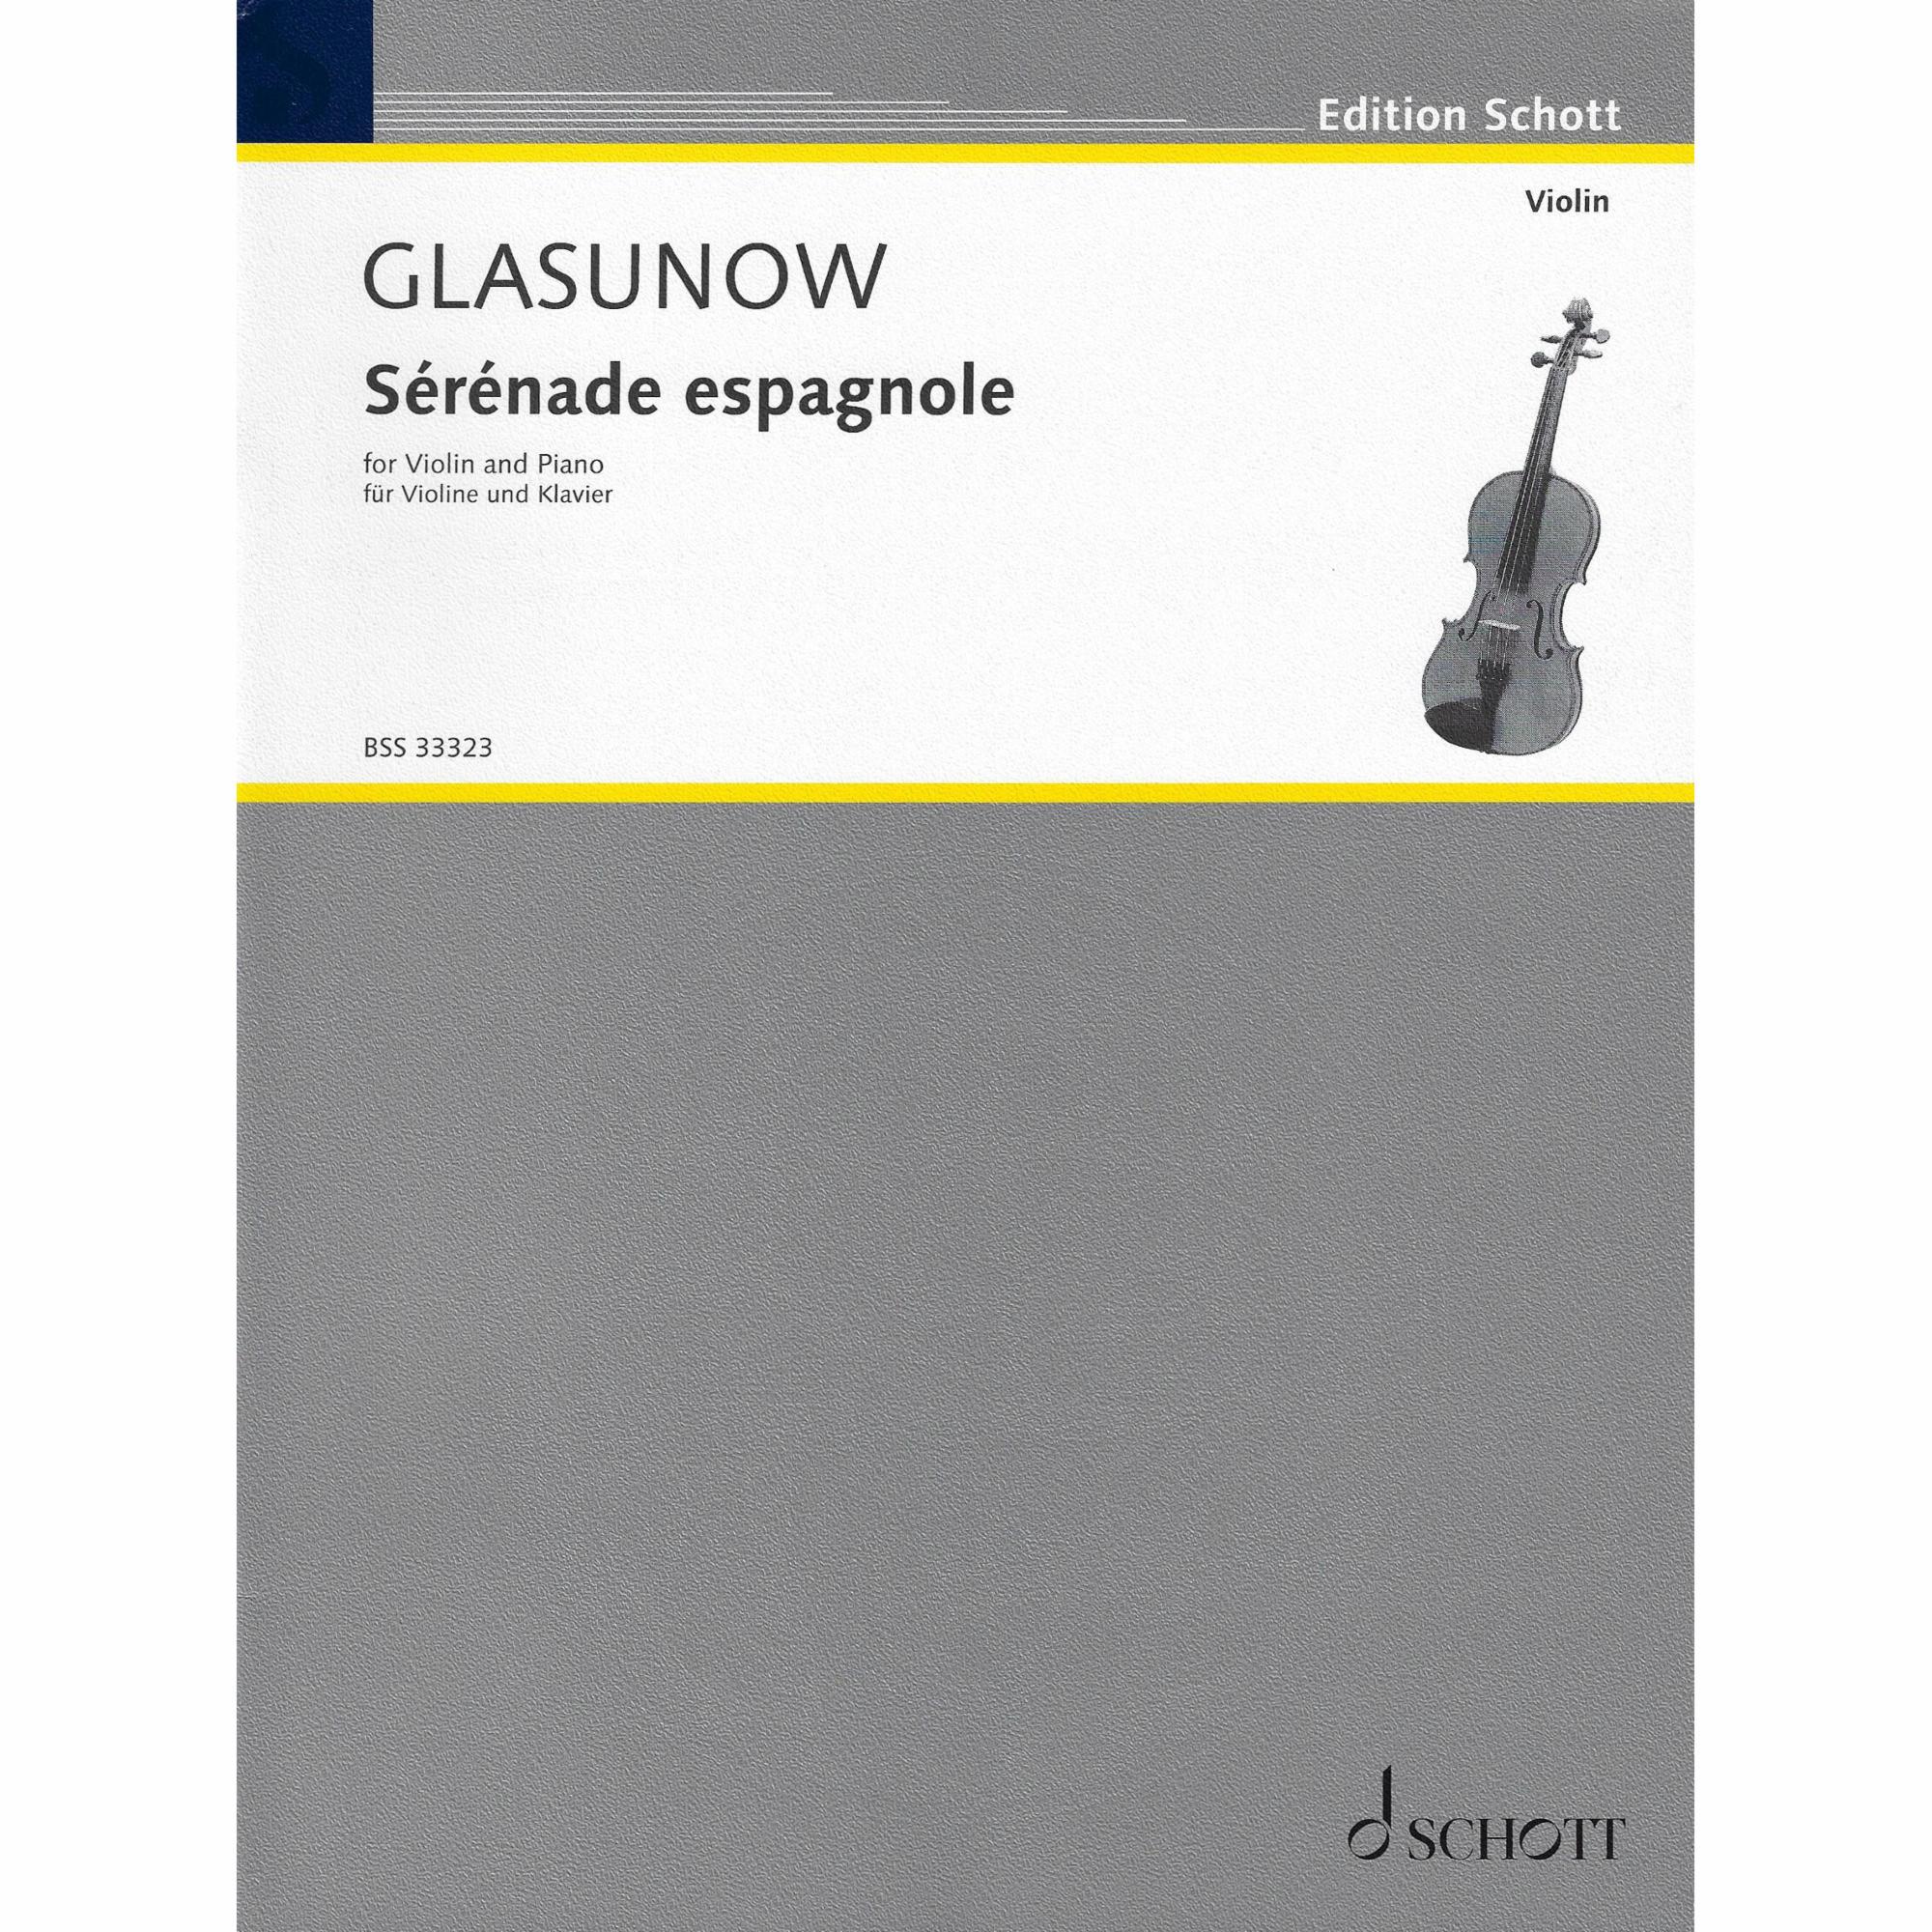 Glazunov -- Serenade espagnole for Violin and Piano